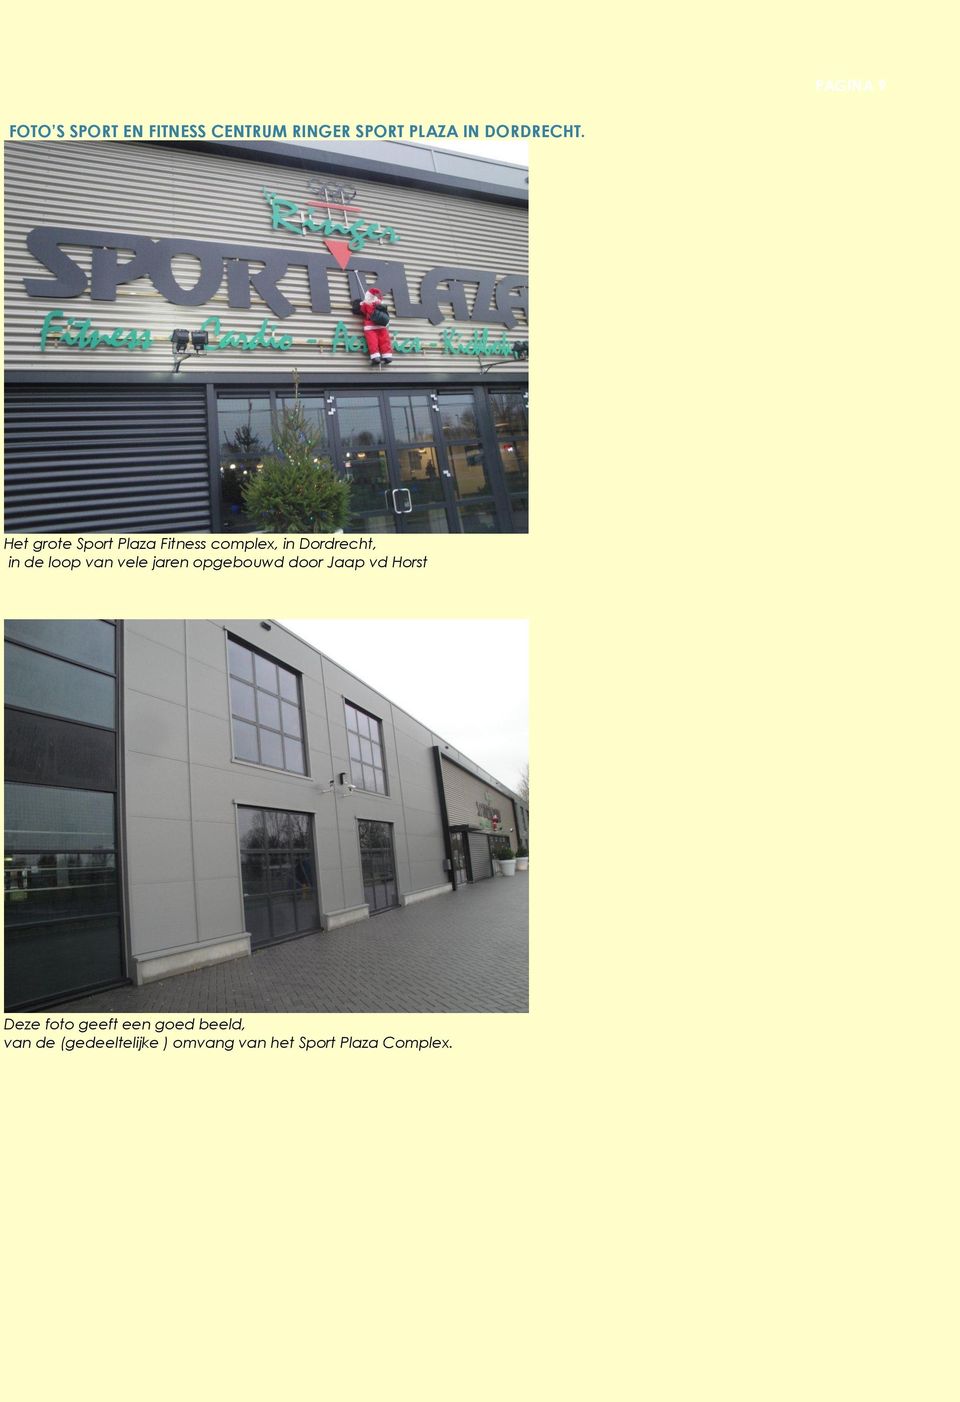 Het grote Sport Plaza Fitness complex, in Dordrecht, in de loop van